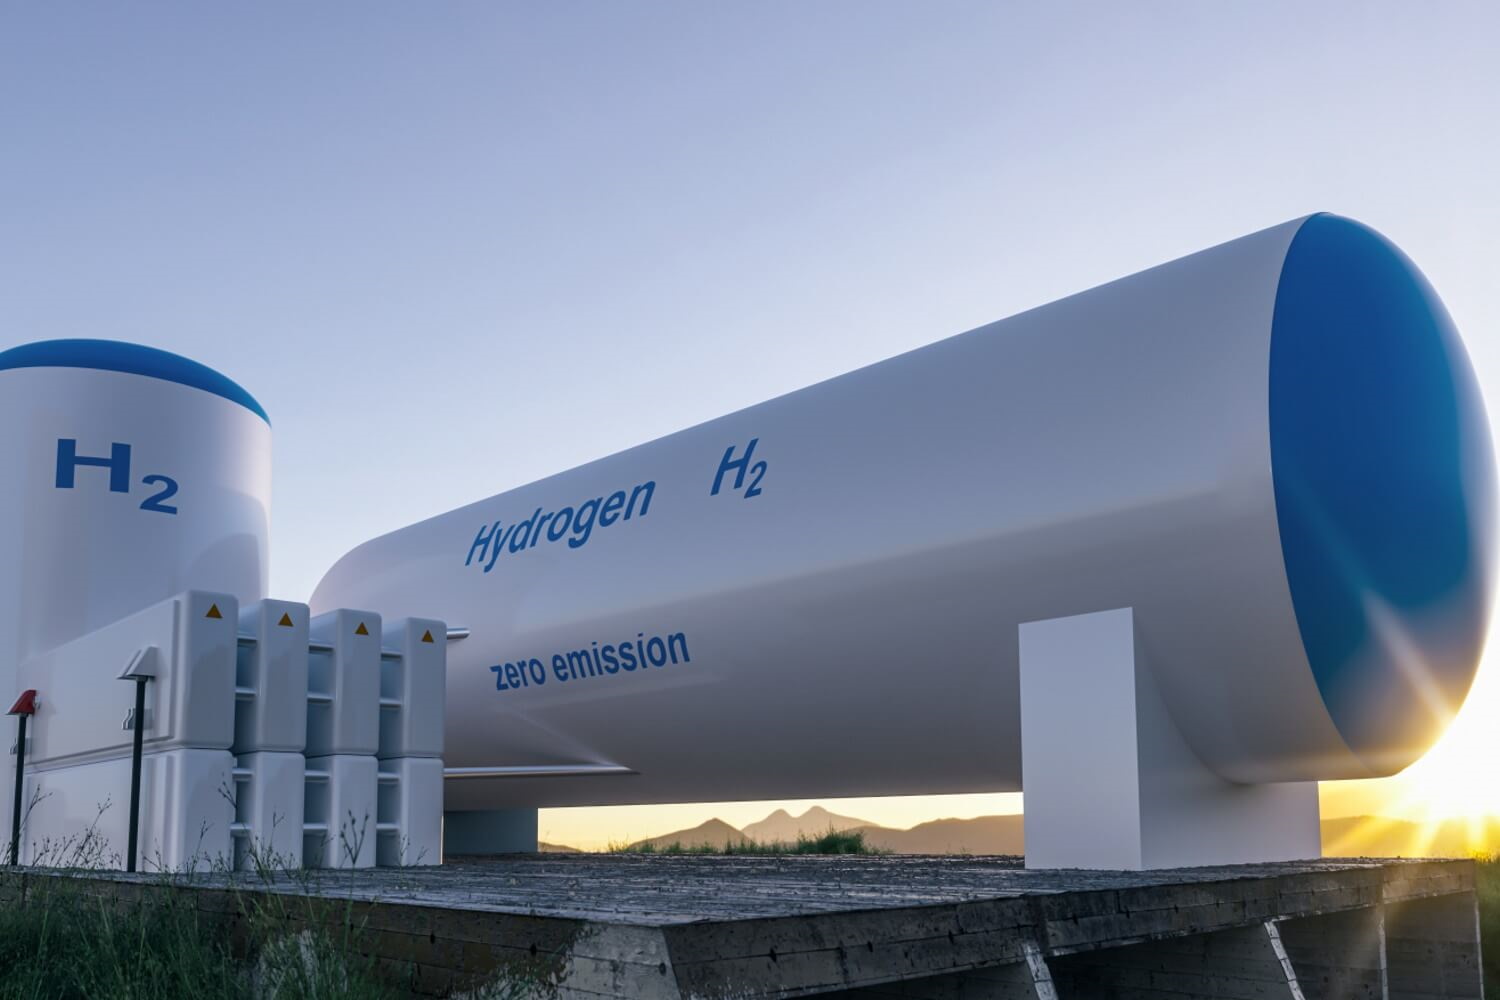 Wasserstofftank und Elektrolyseur in Weiß mit blauem Schriftzug für "H2"stehen im Freien.